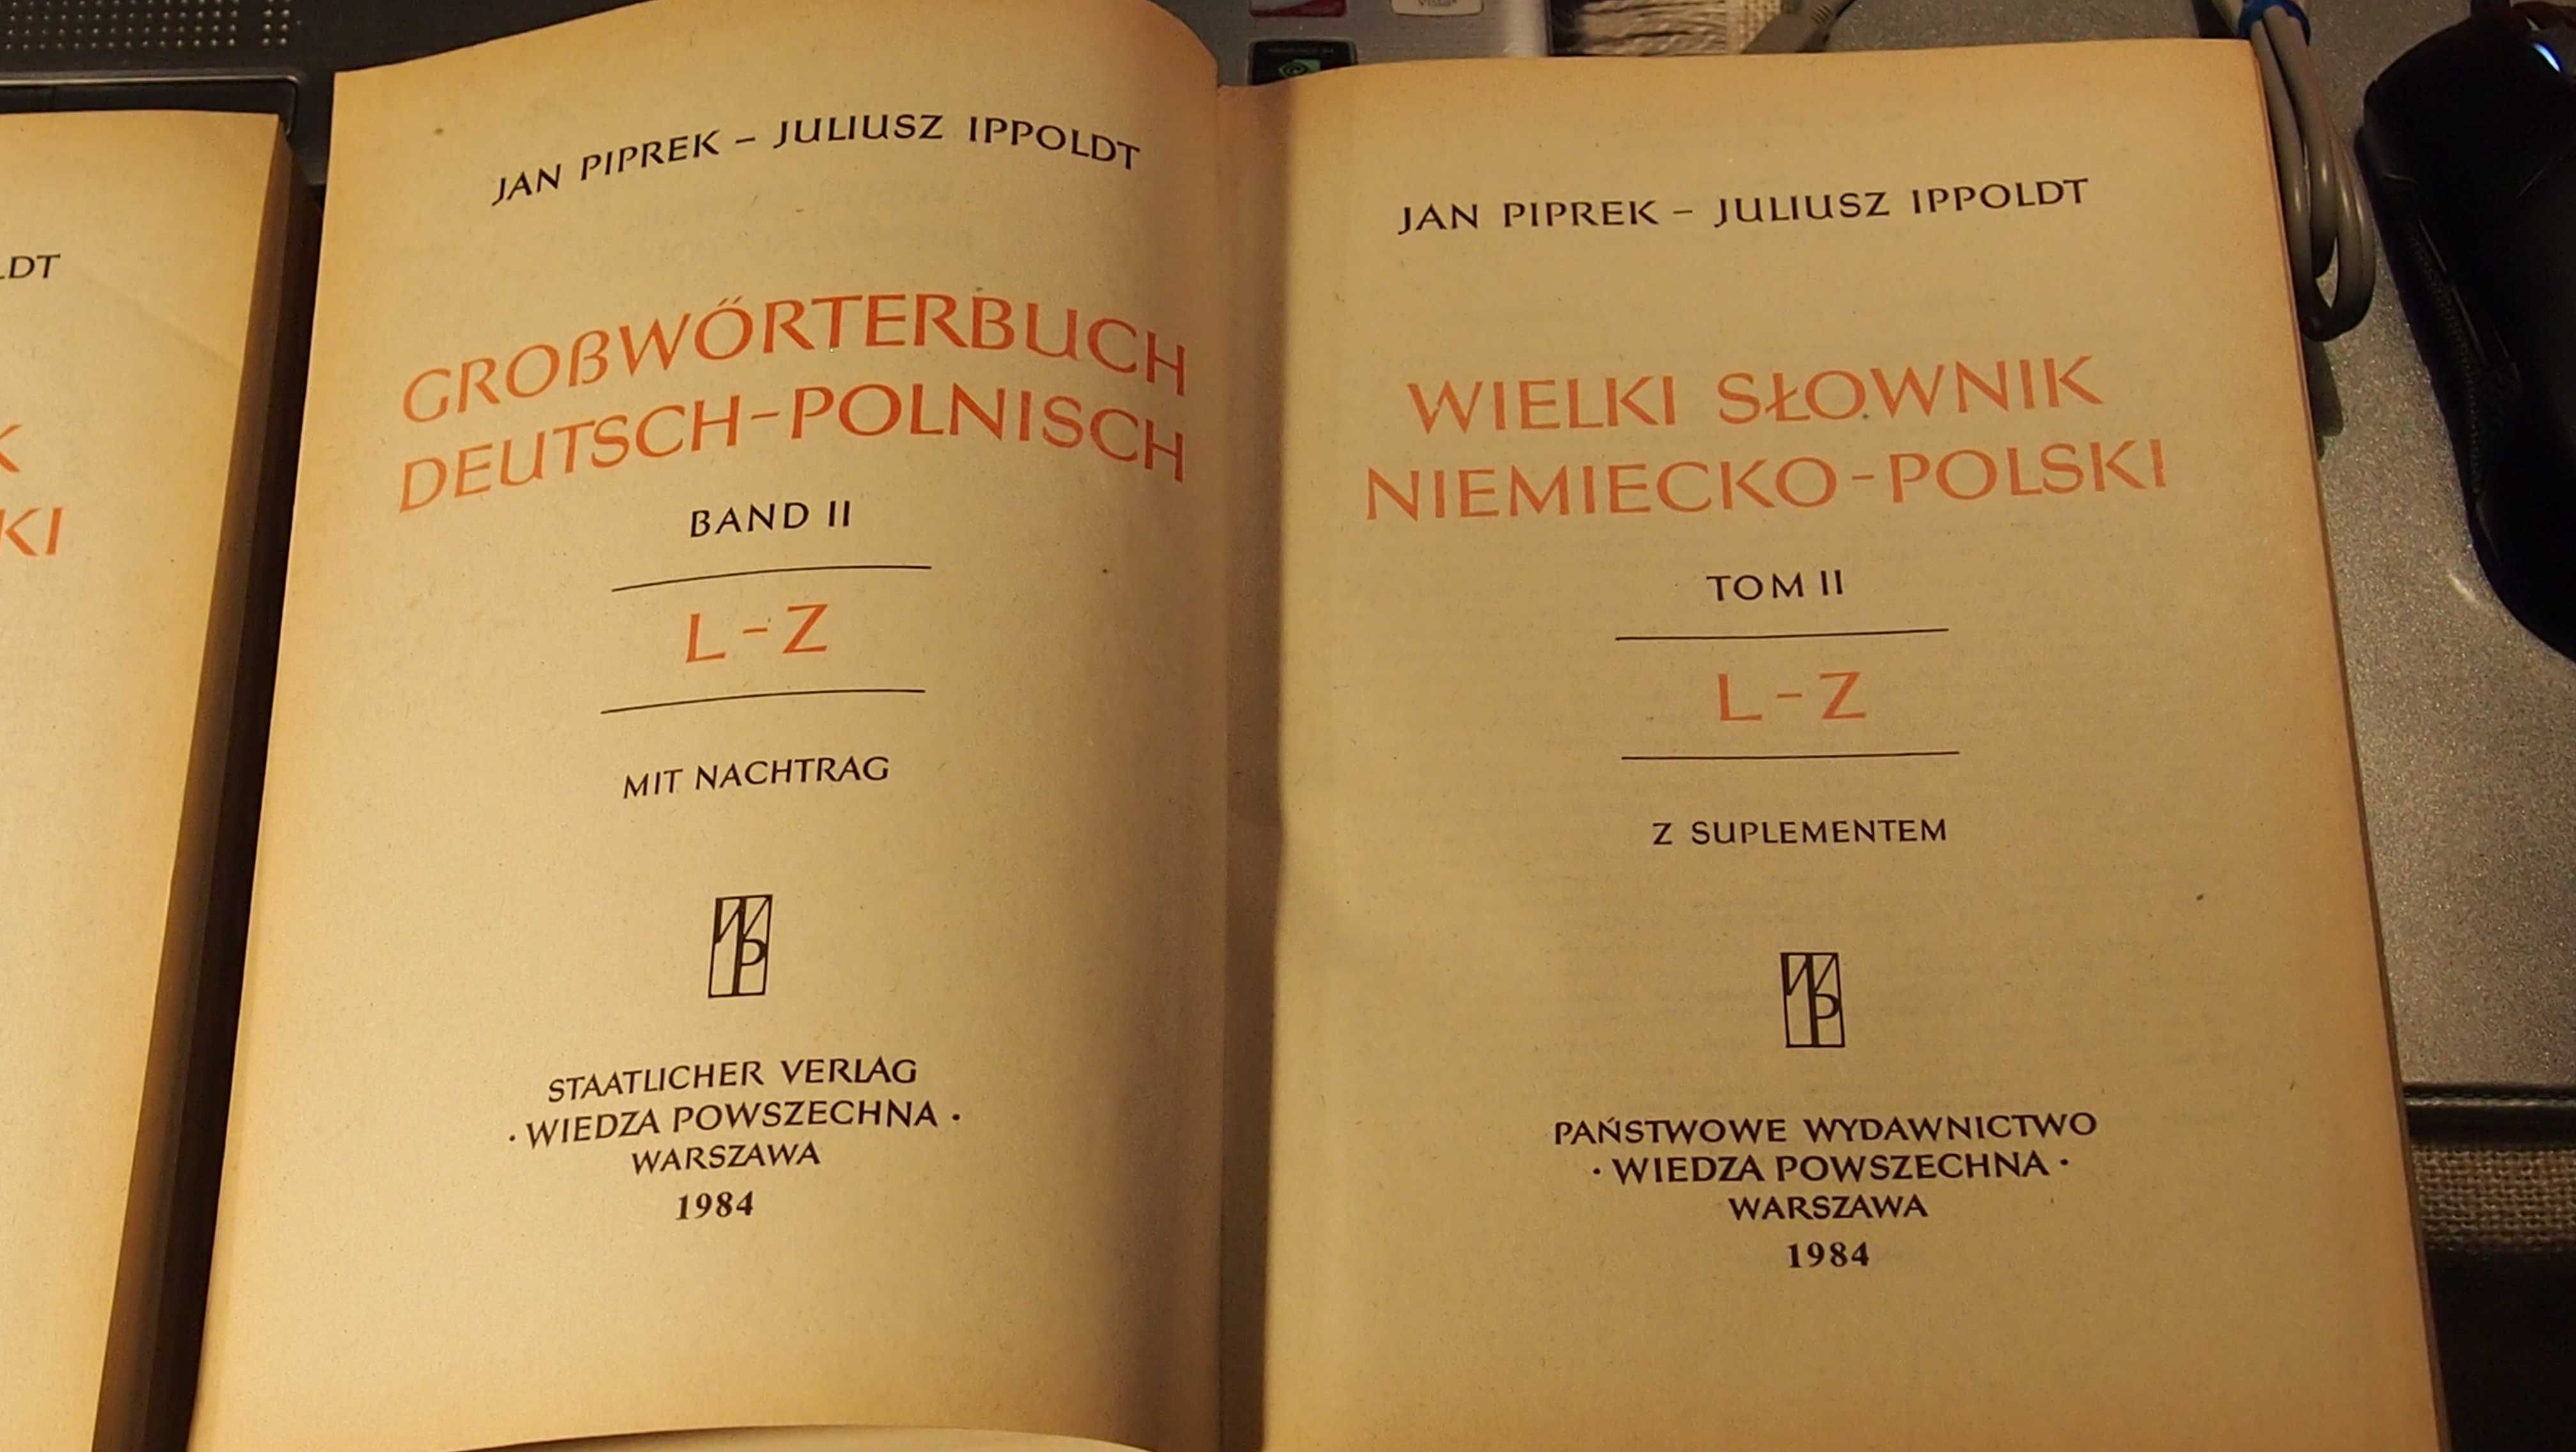 Wielki słownik niemiecko- polski, J. Piprek- J. Ippoldt, tom I + II;